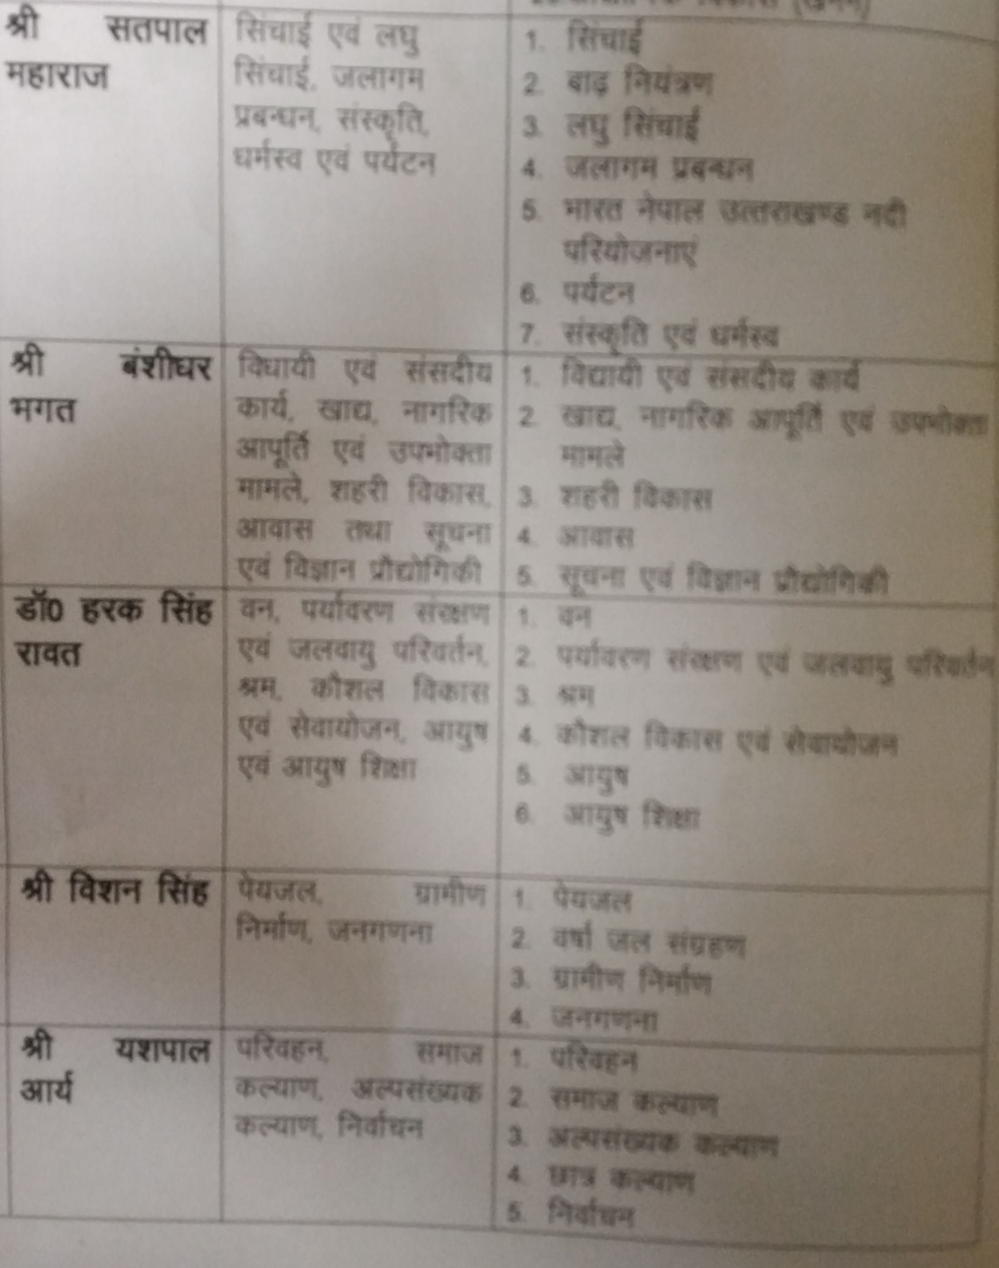 Uttarakhand ministers department